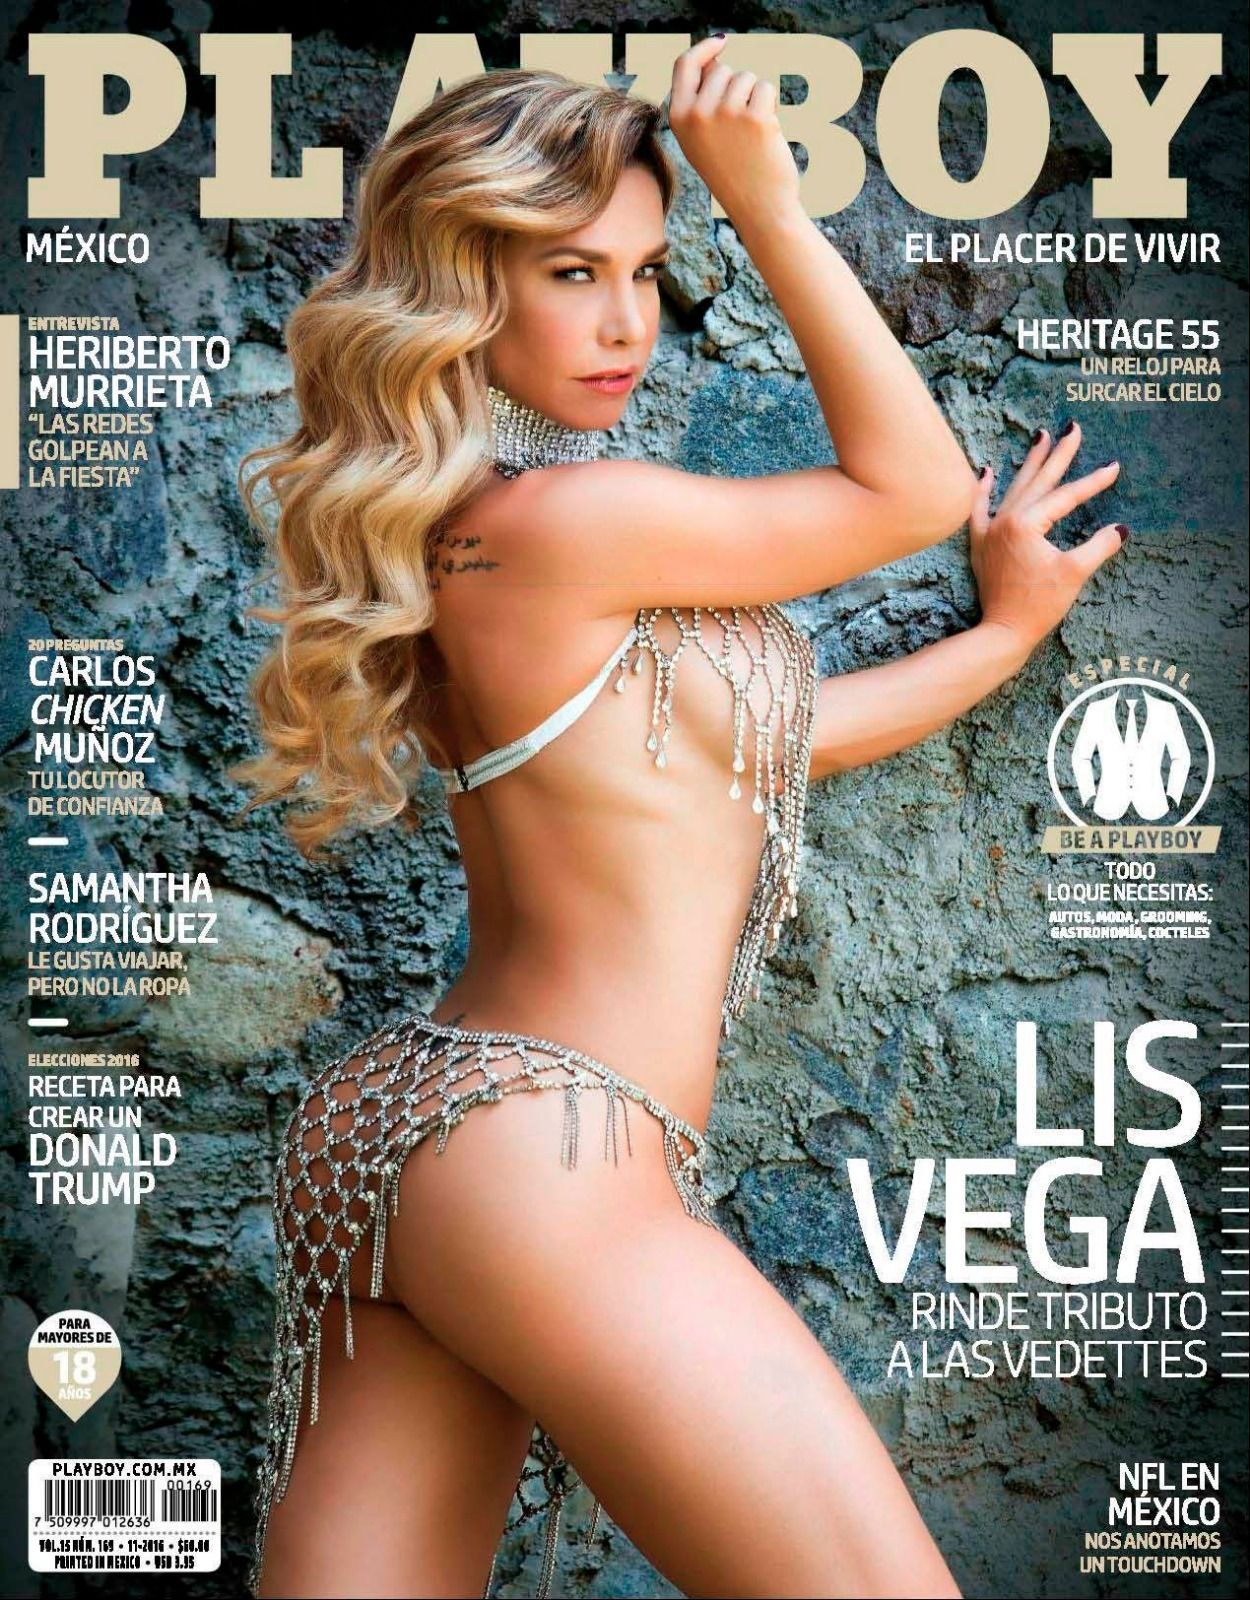 Playboy (Mexico) November 2016 magazine back issue Playboy (Mexico) magizine back copy Playboy (Mexico) November 2016 Magazine Back Issue Published by HMH Publishing, Hugh Marston Hefner. Covergirl Lis Vega (Liseska Vega).